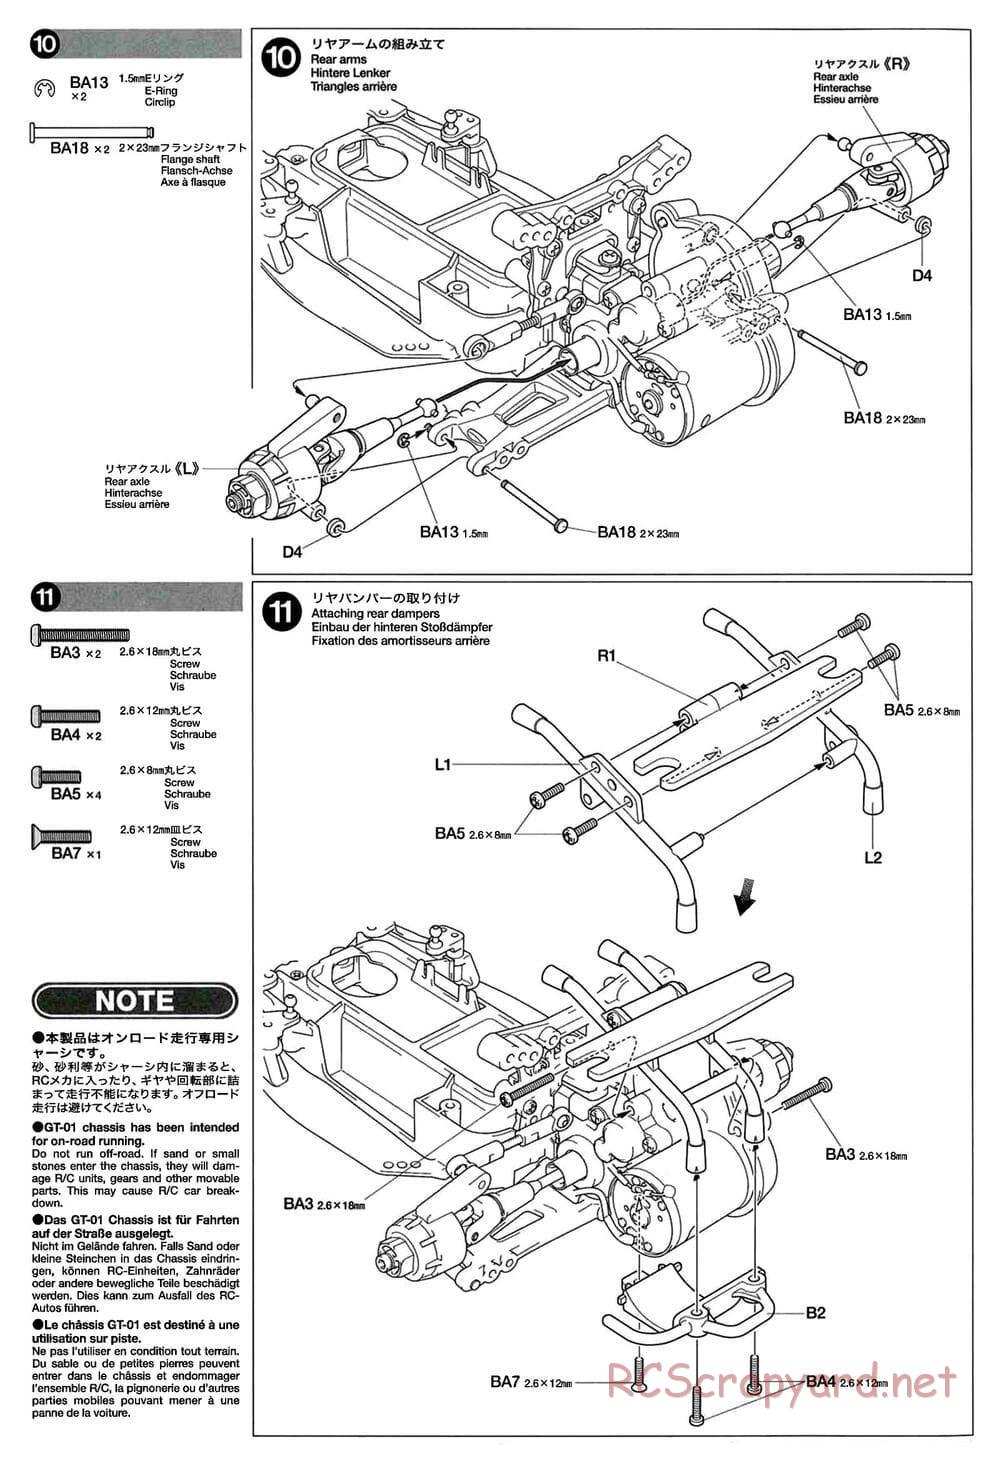 Tamiya - GT-01 Chassis - Manual - Page 8